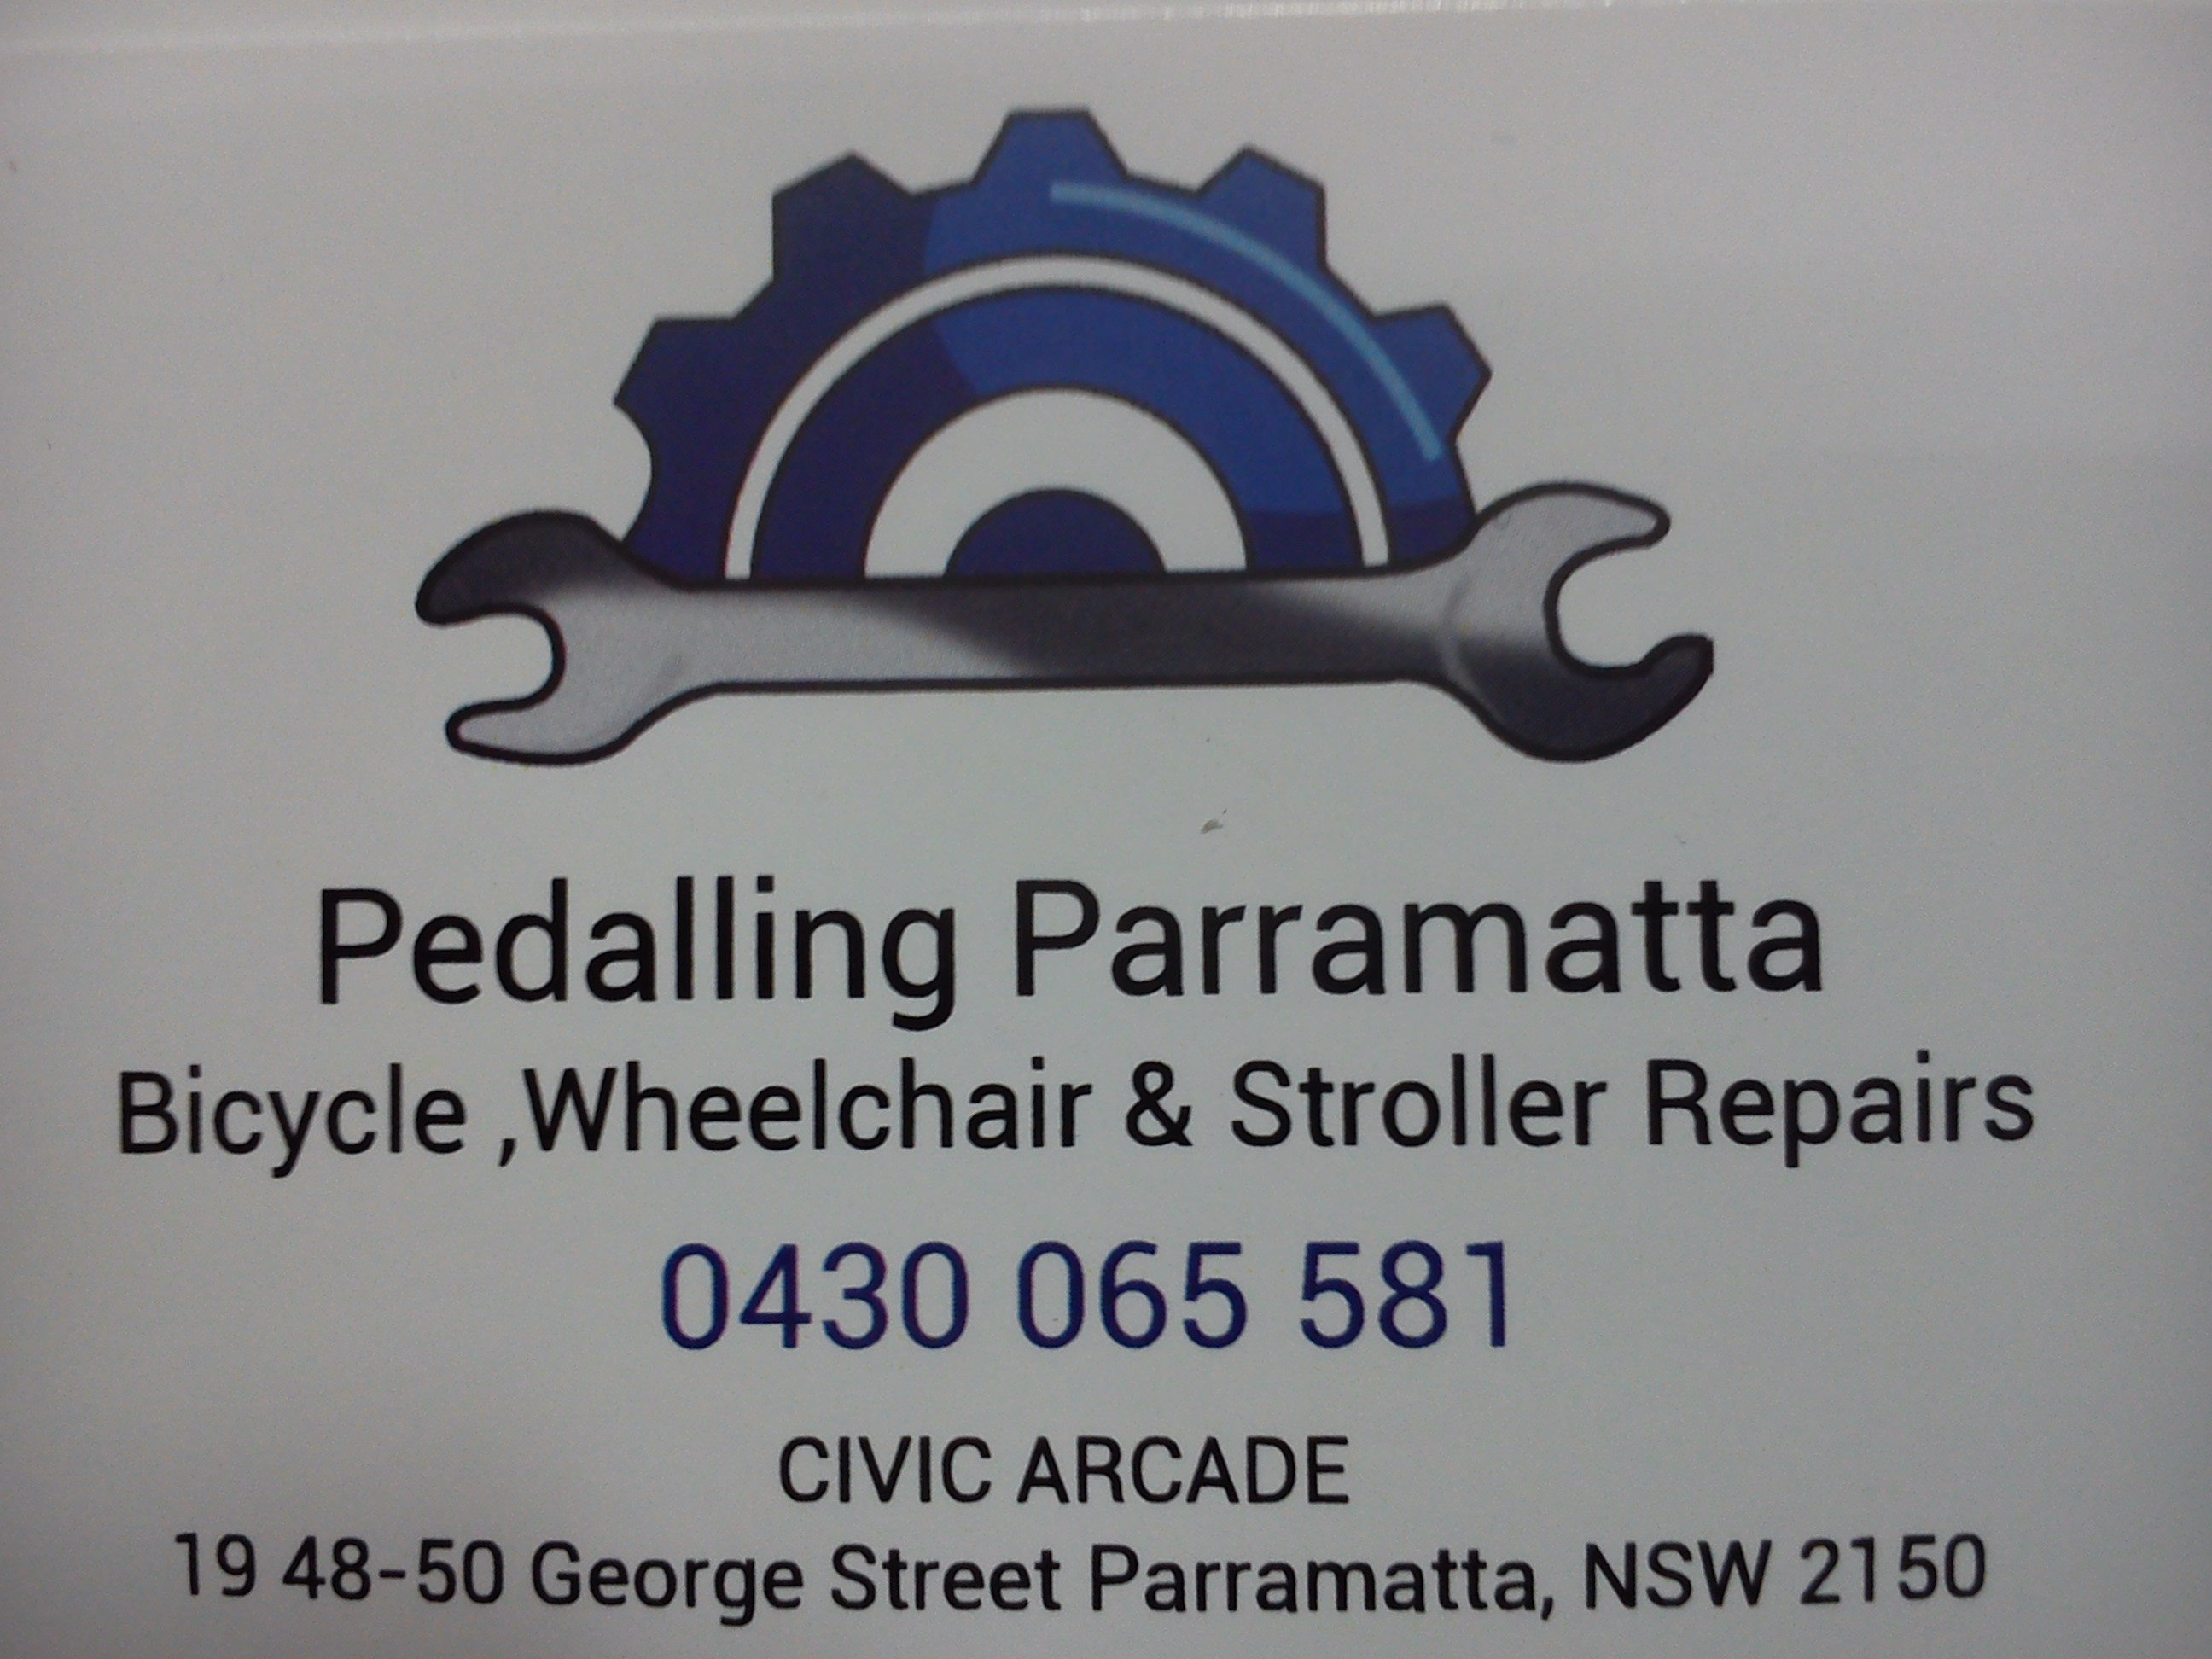 Pedaling Parramatta